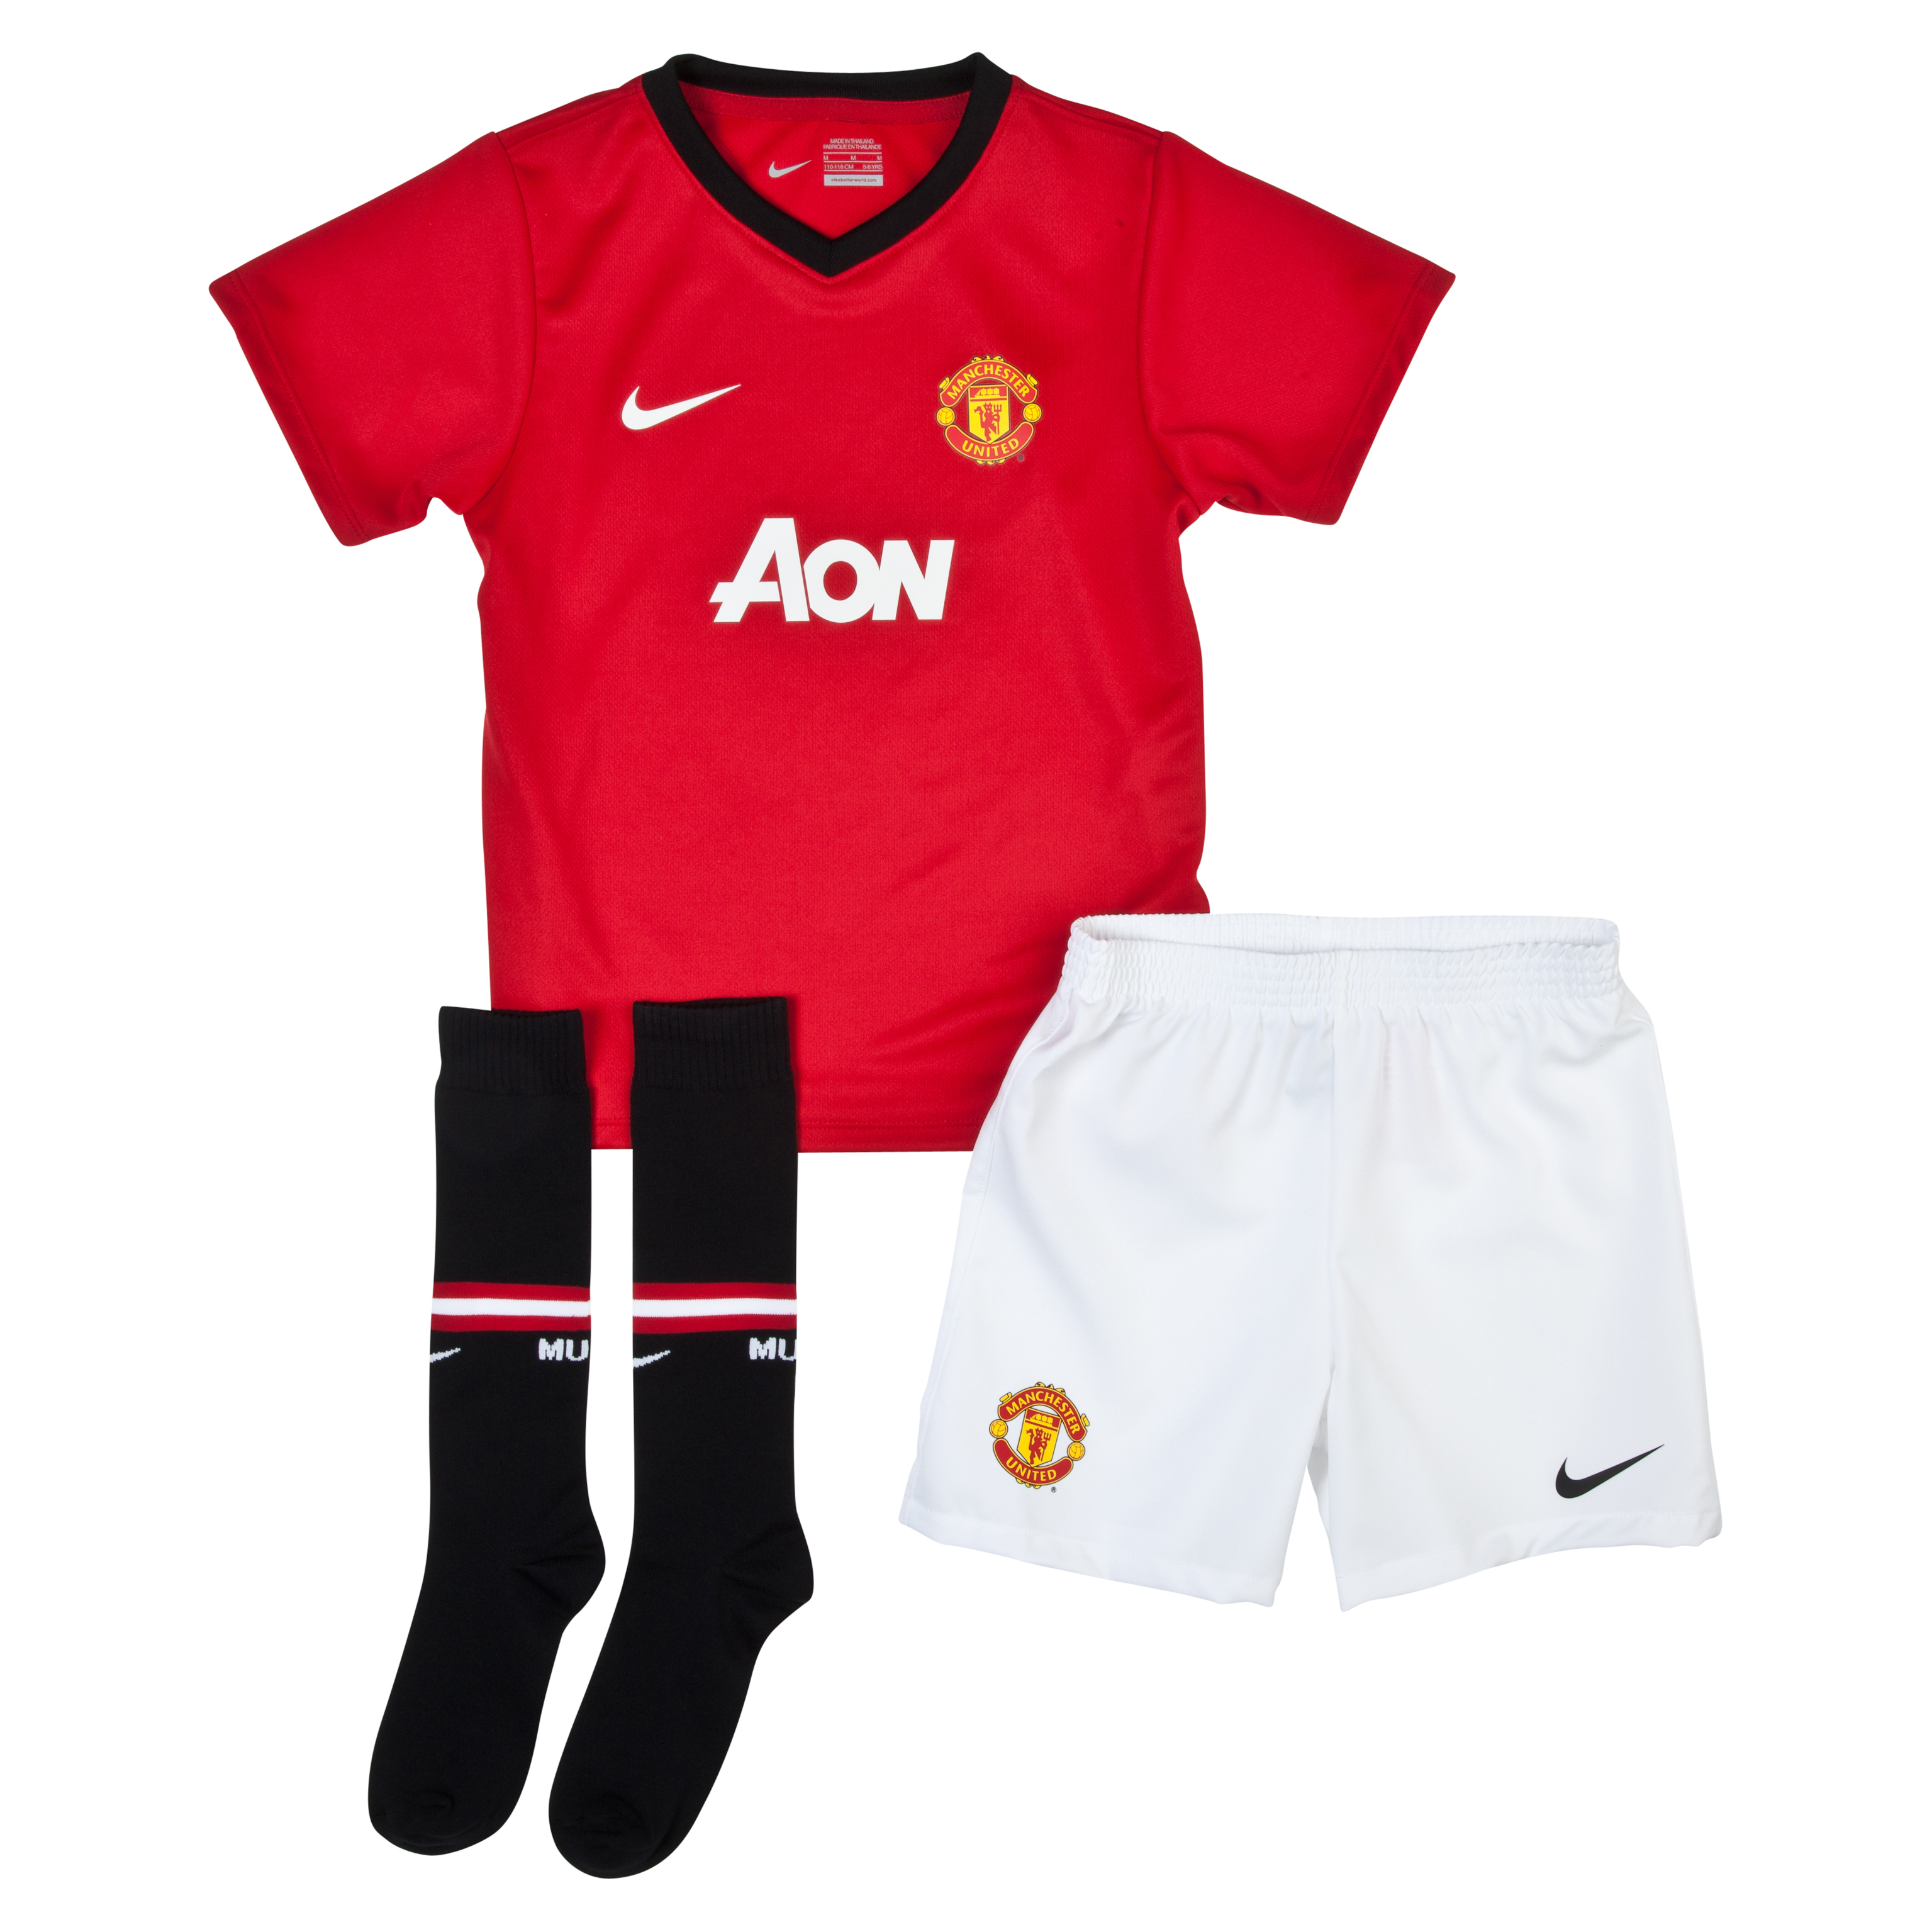 Manchester United Home Kit 2013/14 - Little Boys